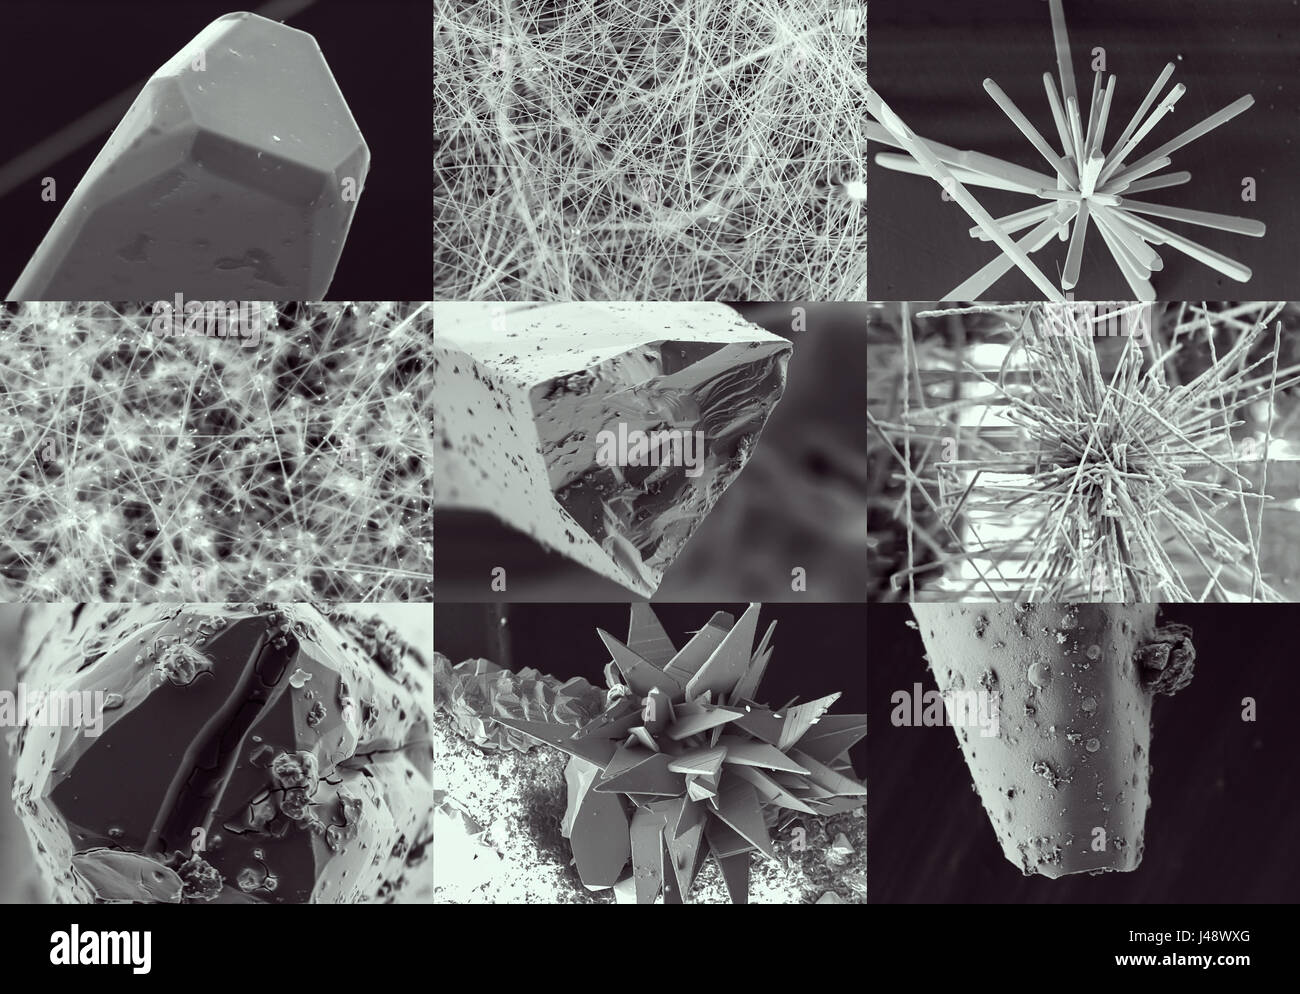 La nanotecnologia collage. Cristallo e baffo nel microscopio. La cristallizzazione o processo di solidificazione vista attraverso il microscopio elettronico con multipl Foto Stock